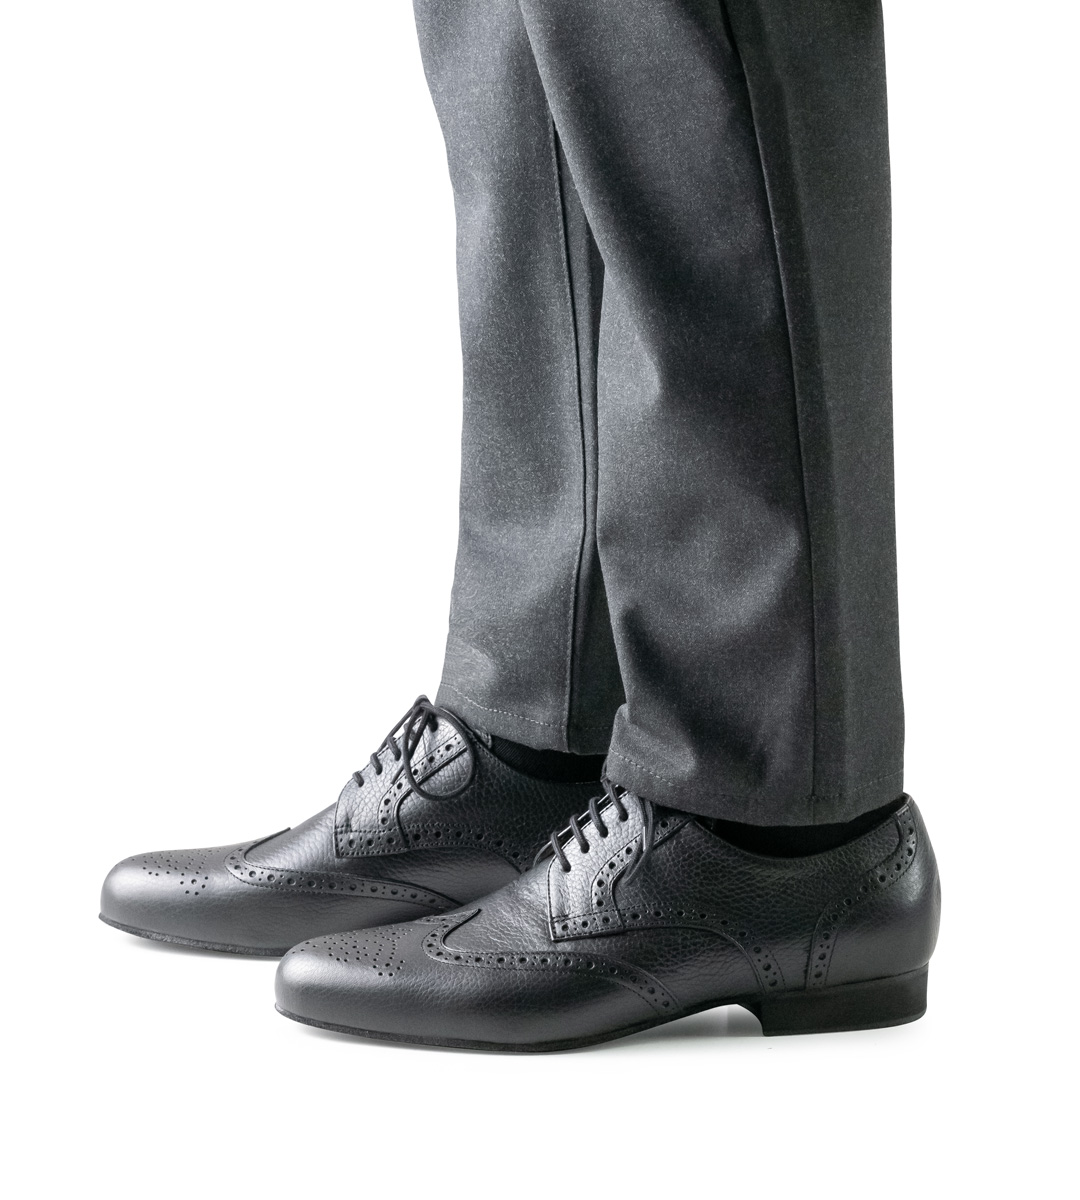 Herrentanzschuh in schwarz mit Budapester Muster in Kombination mit Hose in grau